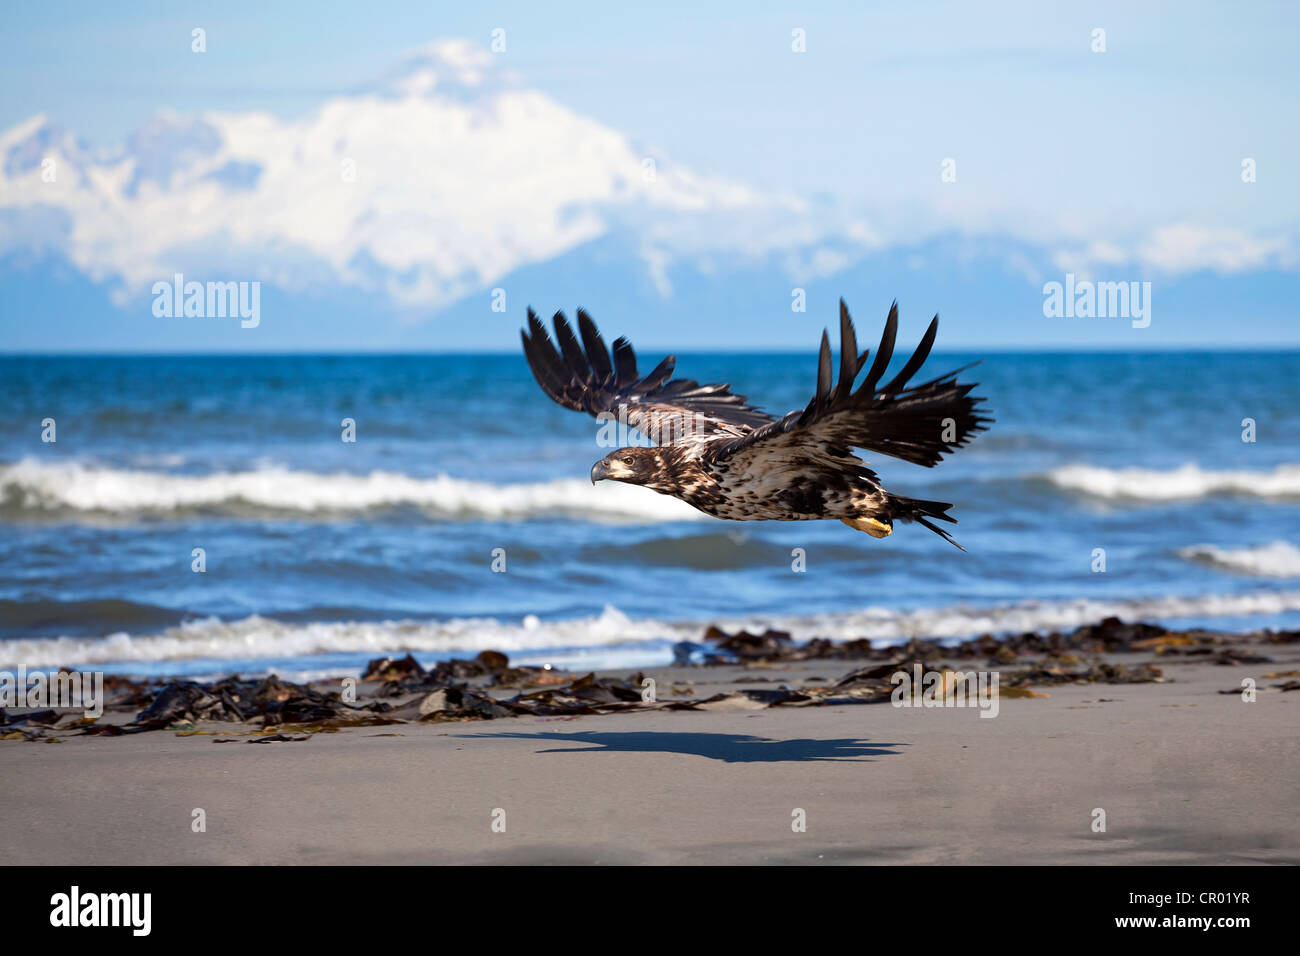 Giovane aquila calva sulla spiaggia al punto di ancoraggio sul Insenatura Cook con il vulcano Mount Iliamna in distanza, Alaska, STATI UNITI D'AMERICA Foto Stock